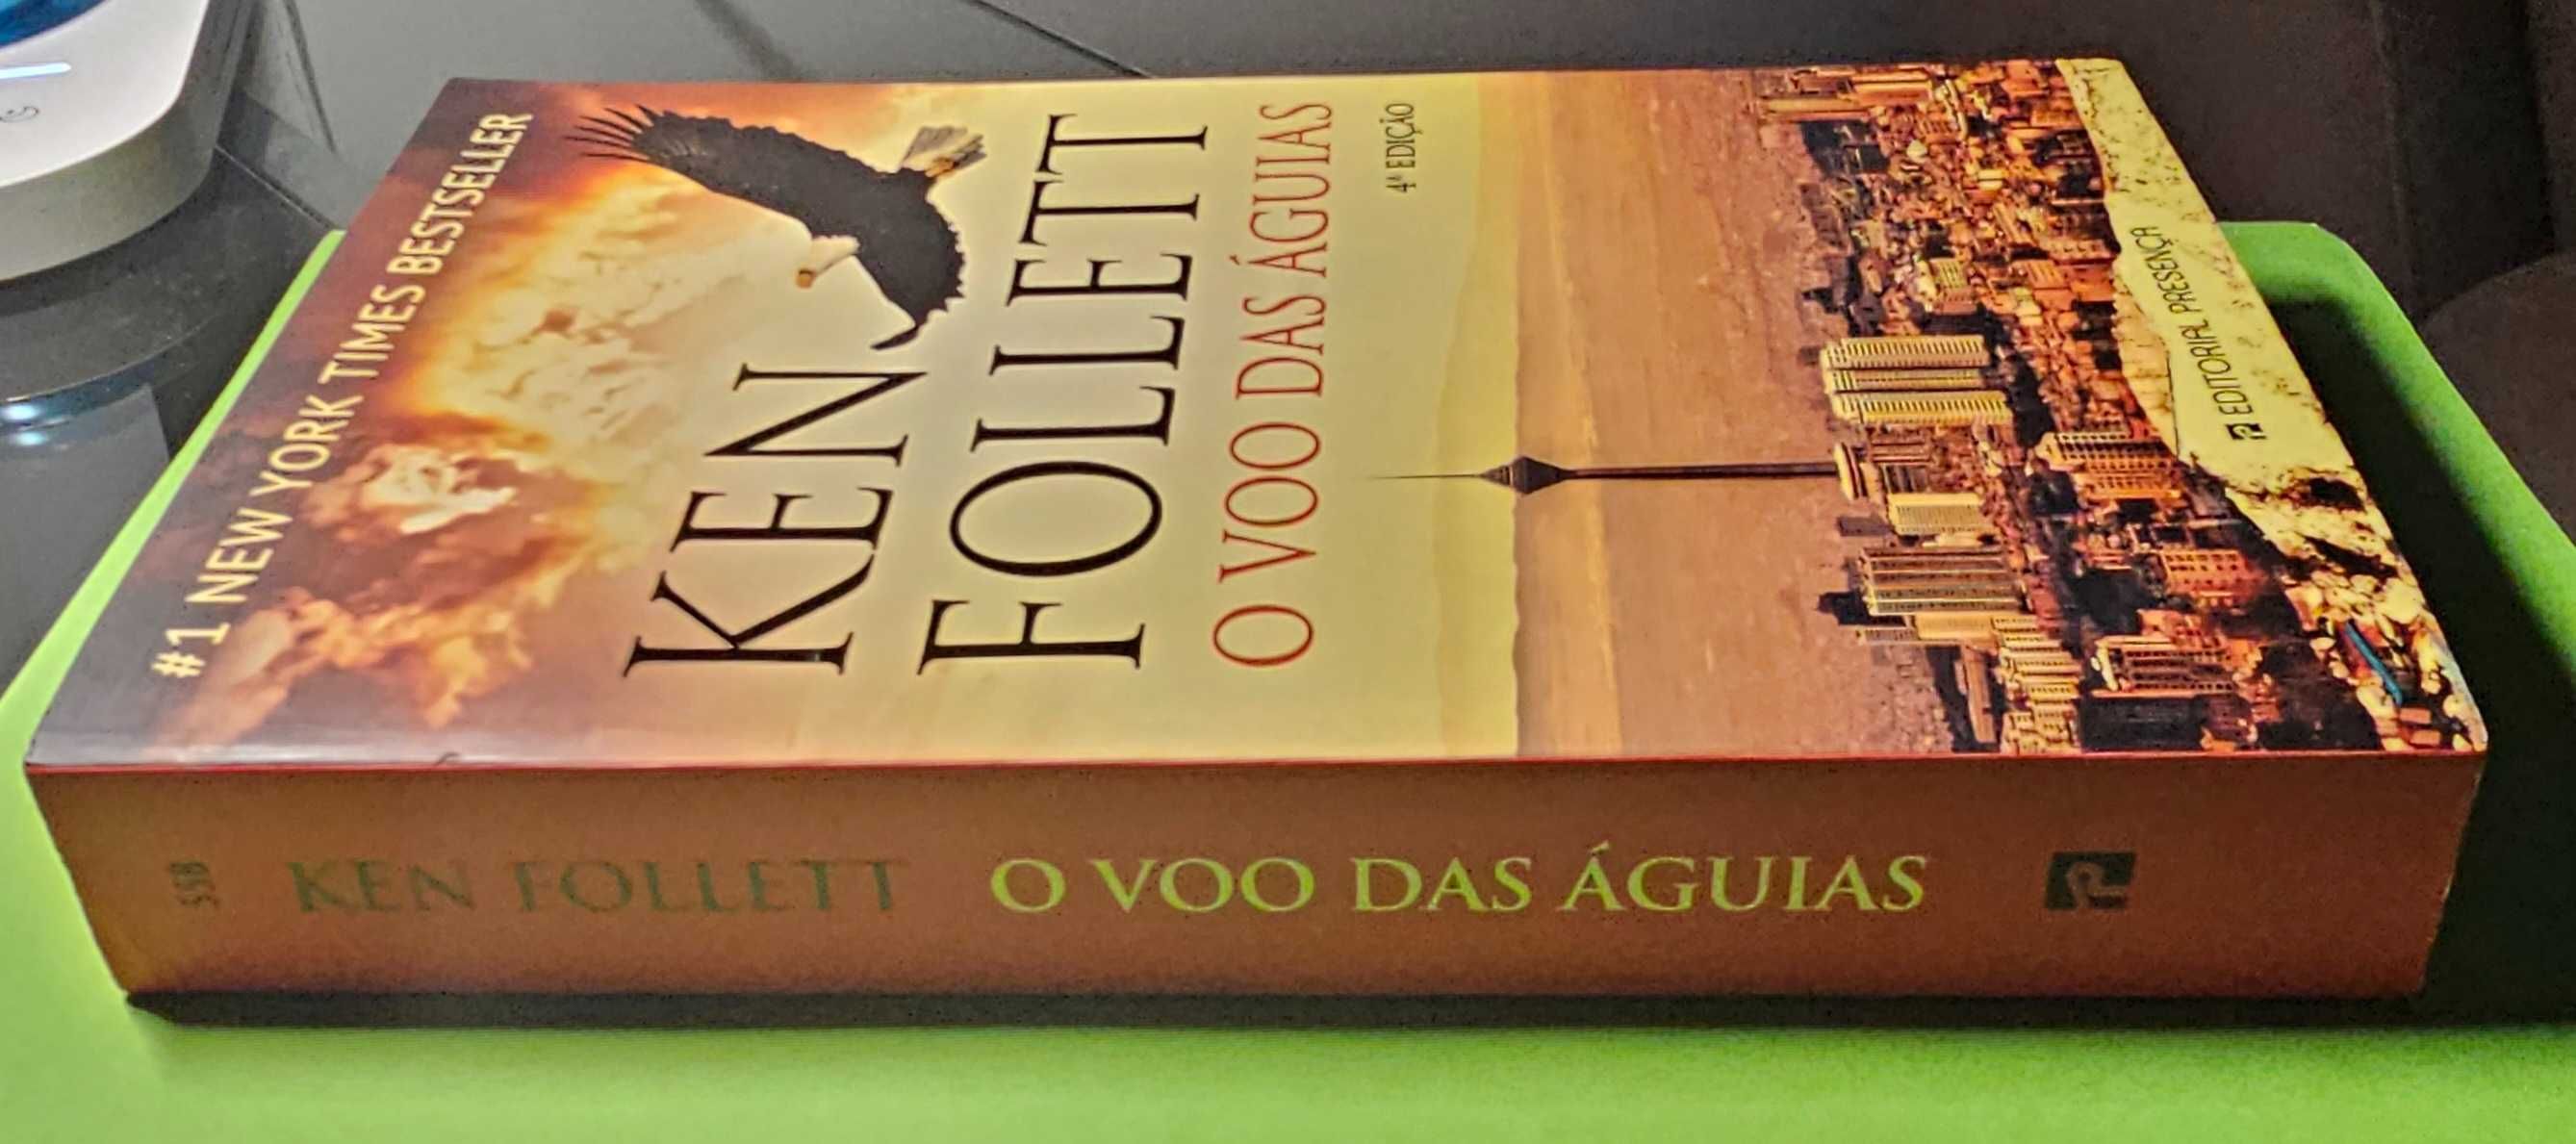 Livro: O Voo das Águias de Ken Follett